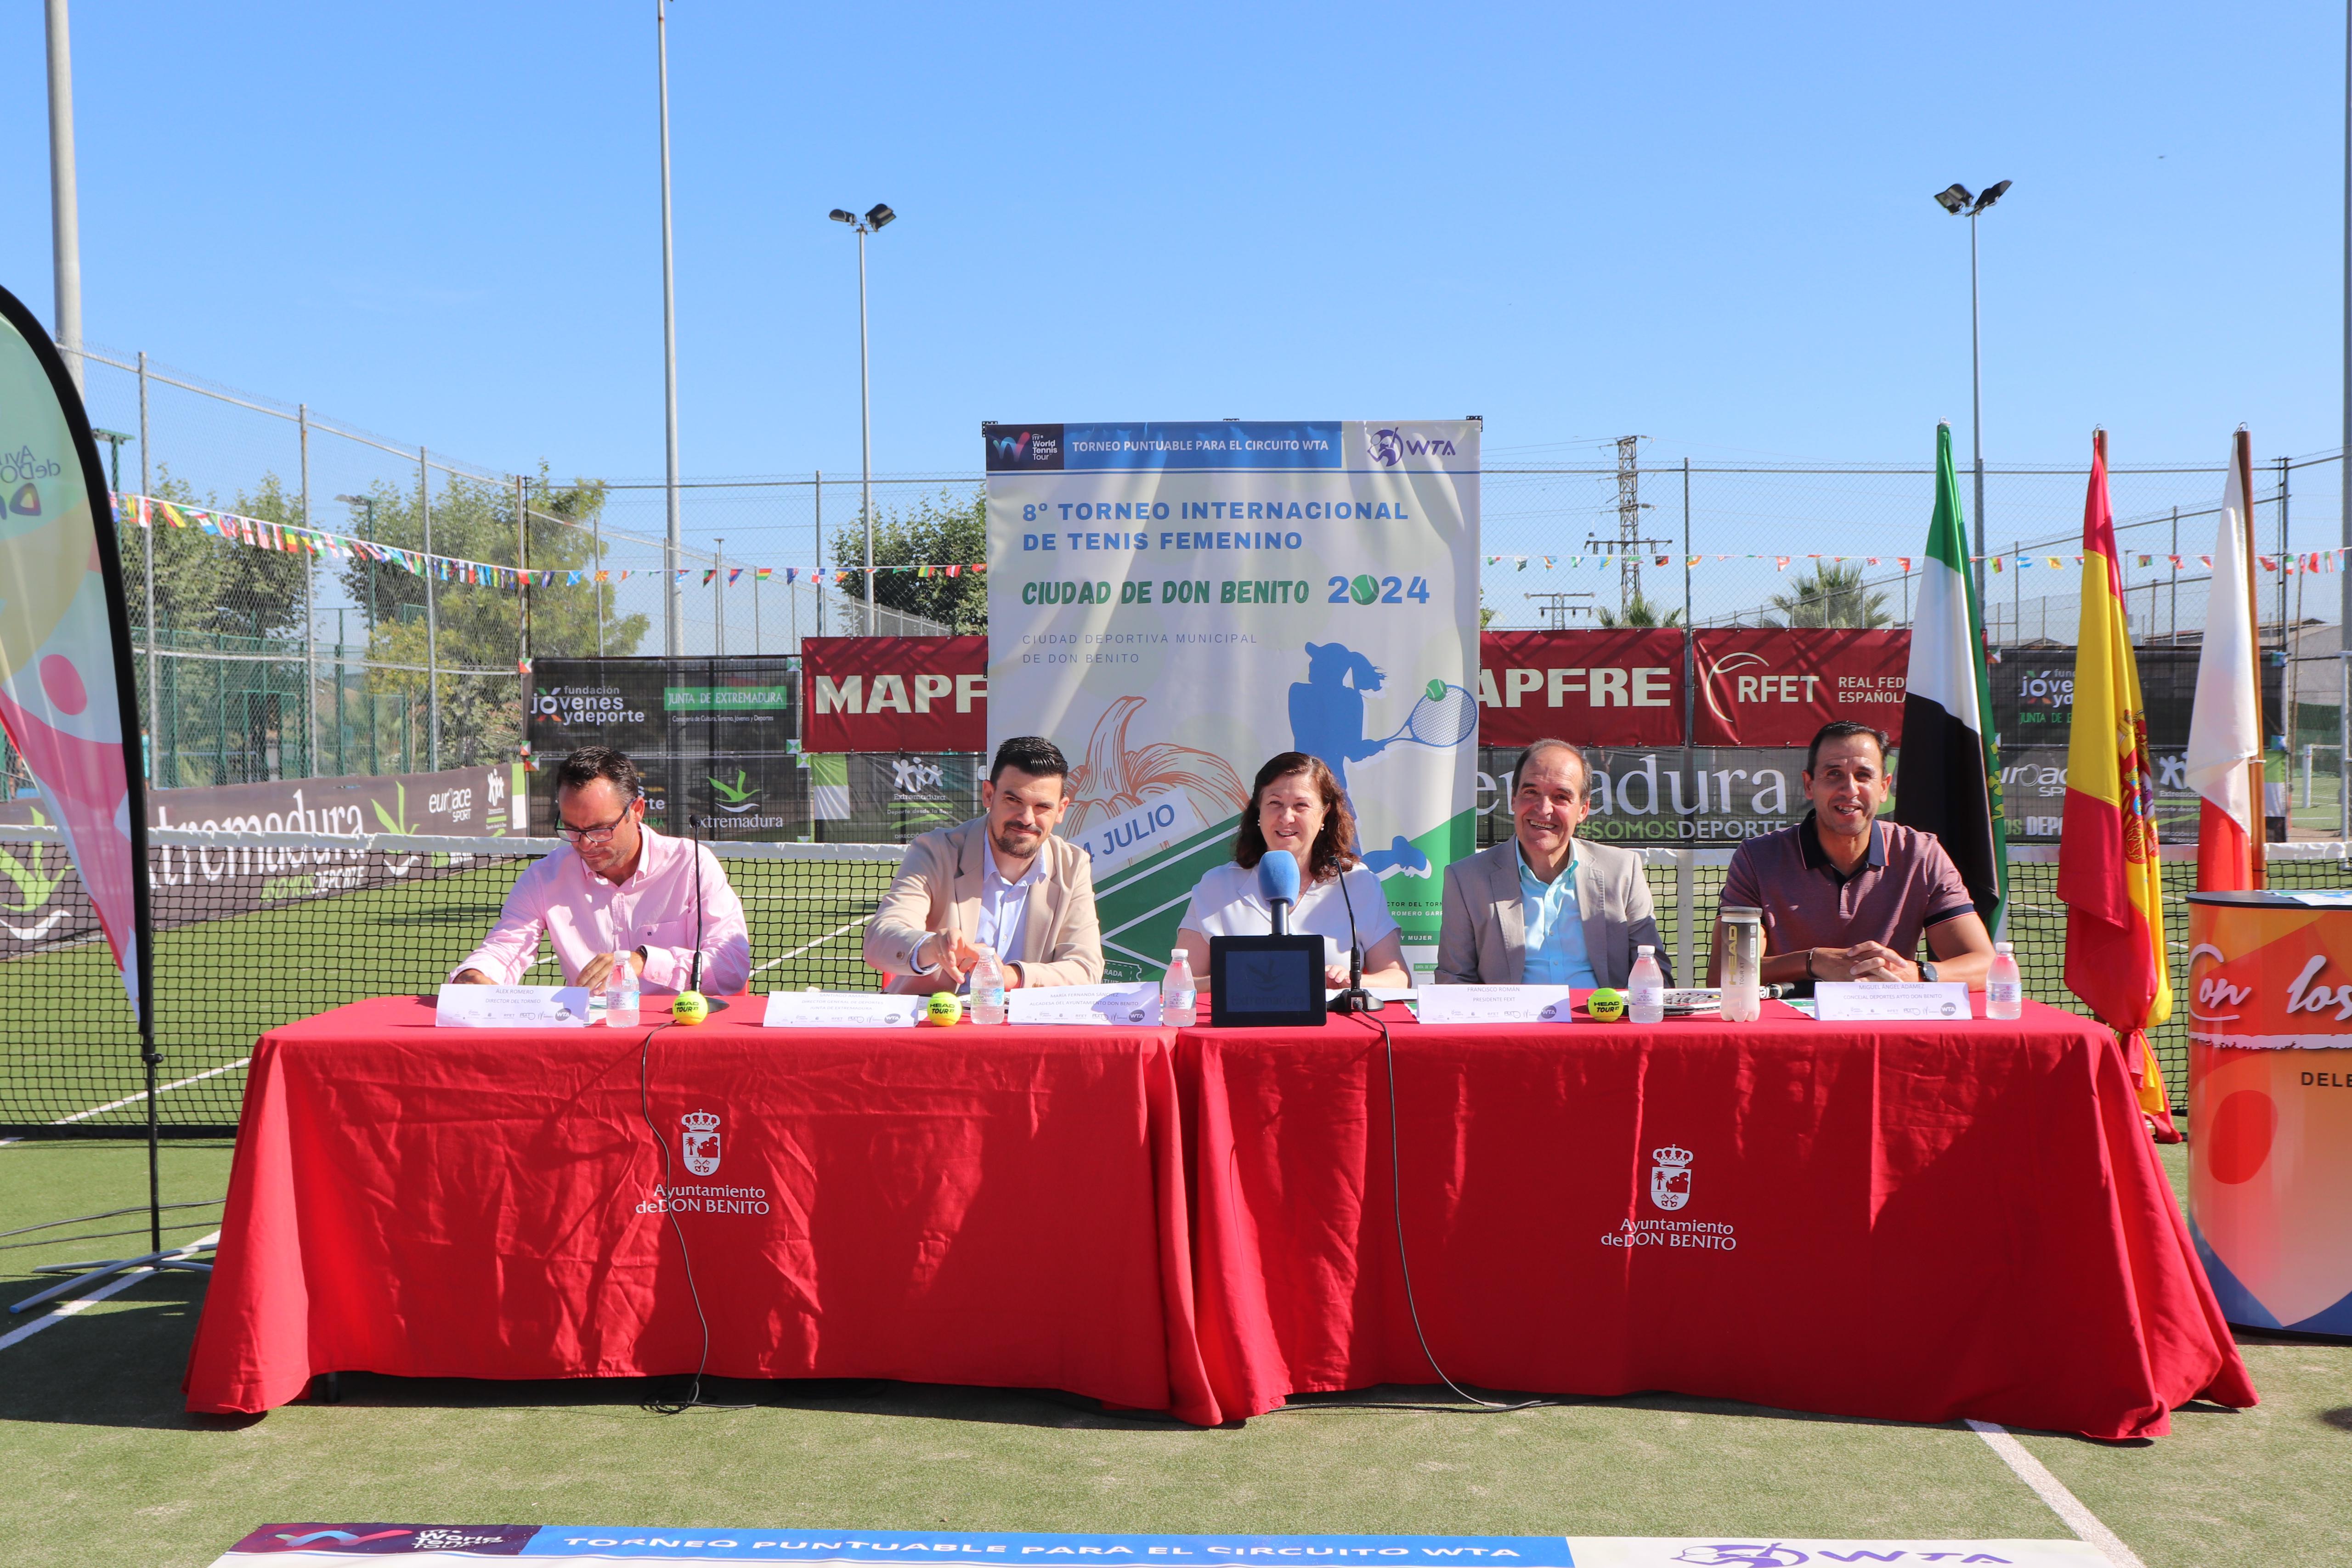 Image 4 of article La Junta de Extremadura apoya el VIII Torneo Internacional de Tenis Femenino que se celebrará en Don Benito del 6 al 14 de julio